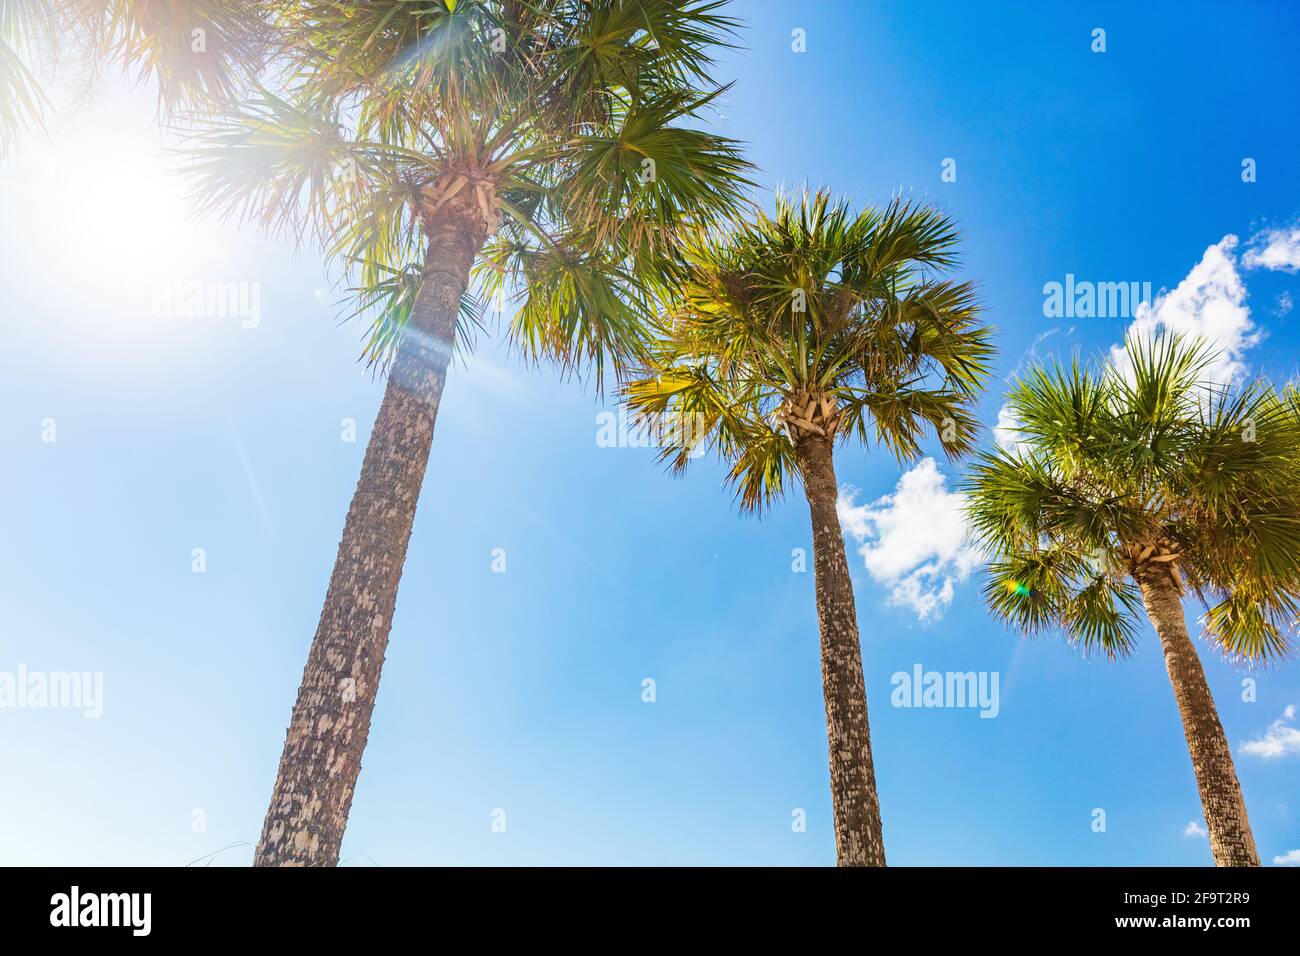 Sommerurlaub sonnigen Hintergrund Strand Urlaub Palmen mit Sonne aufflackern Sonnenschein durch die Blätter von Baum. Blauer Himmel mit Blick auf die Landschaft Stockfoto